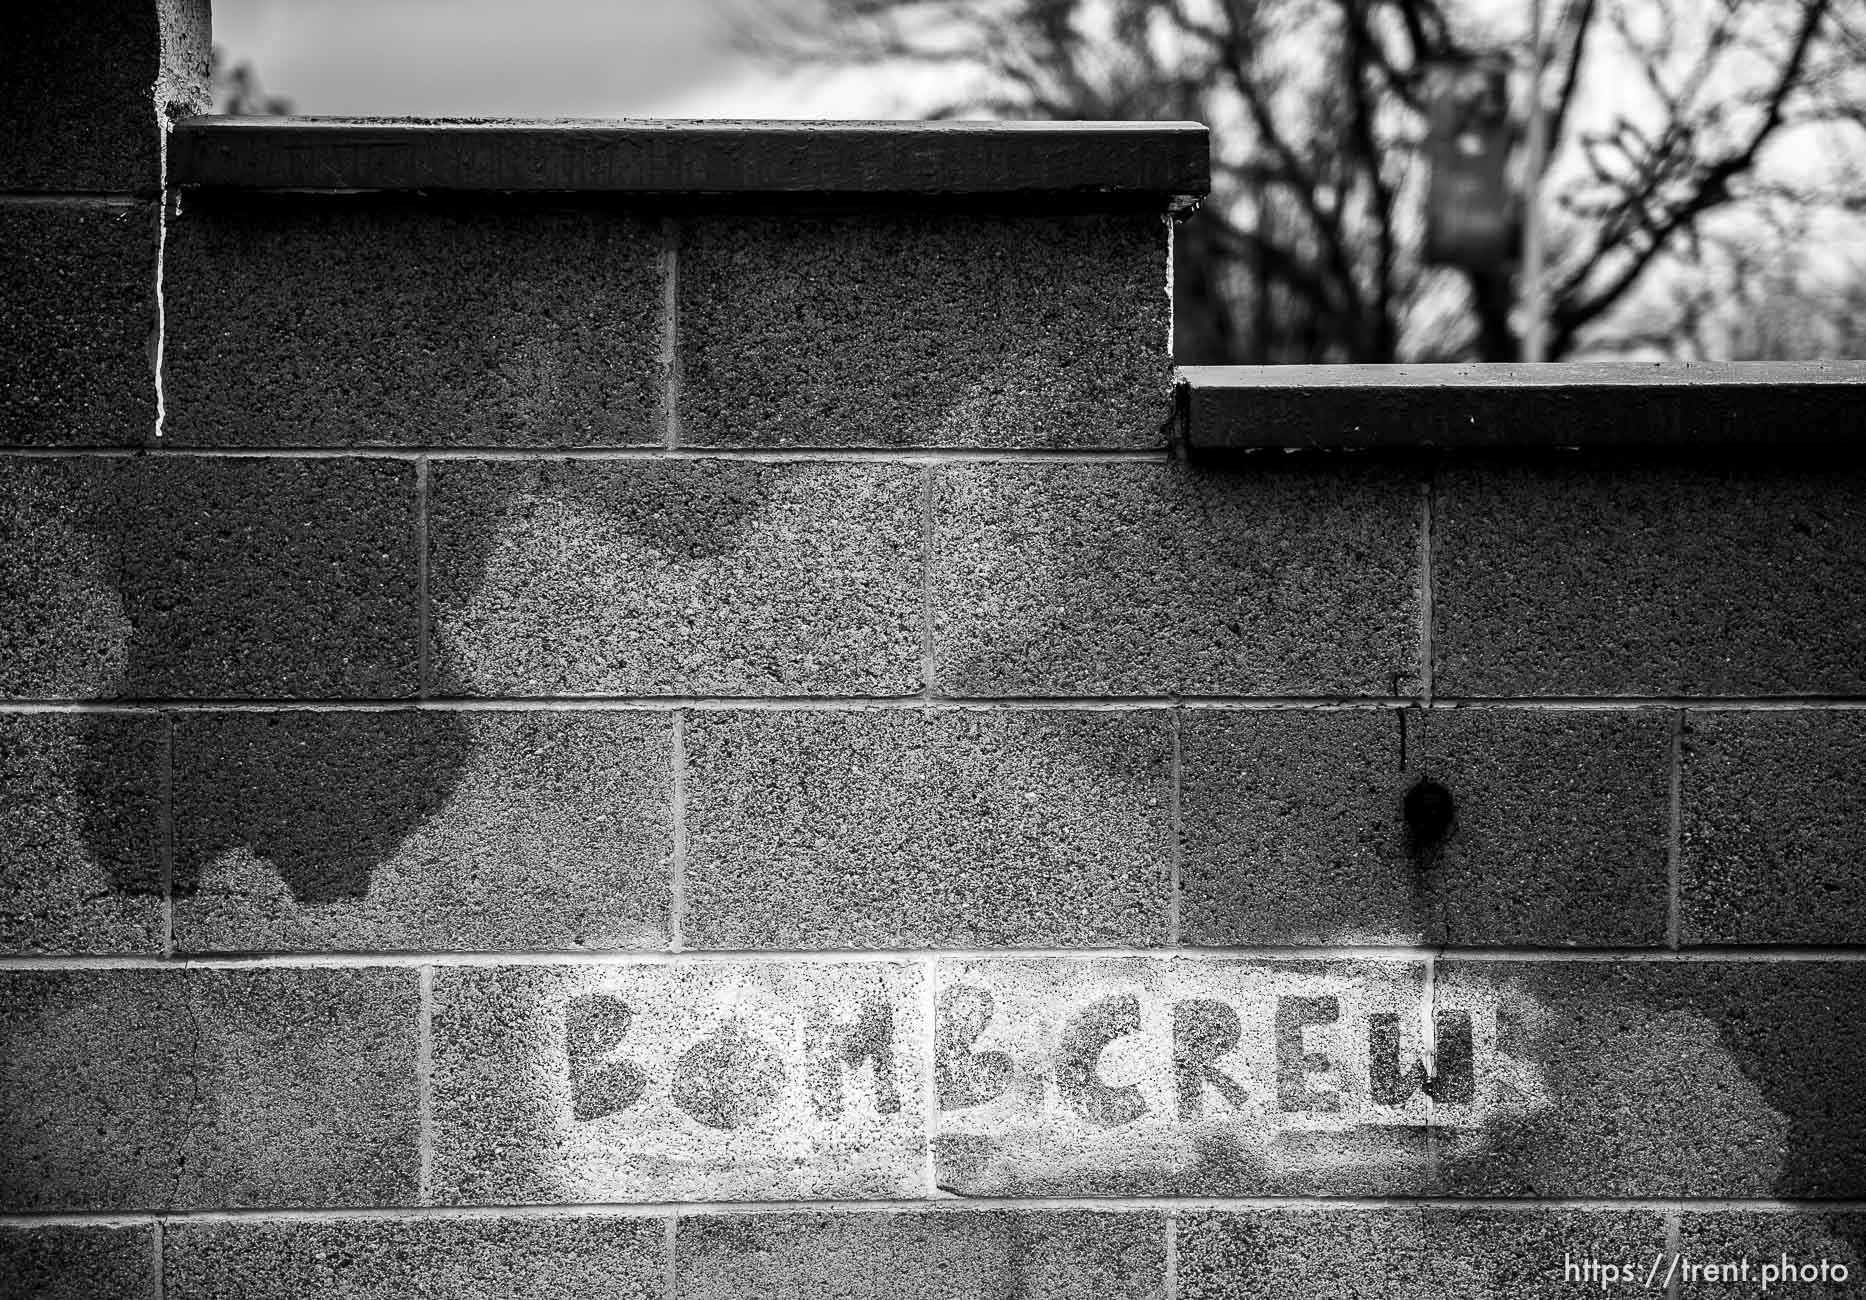 Bombcrew